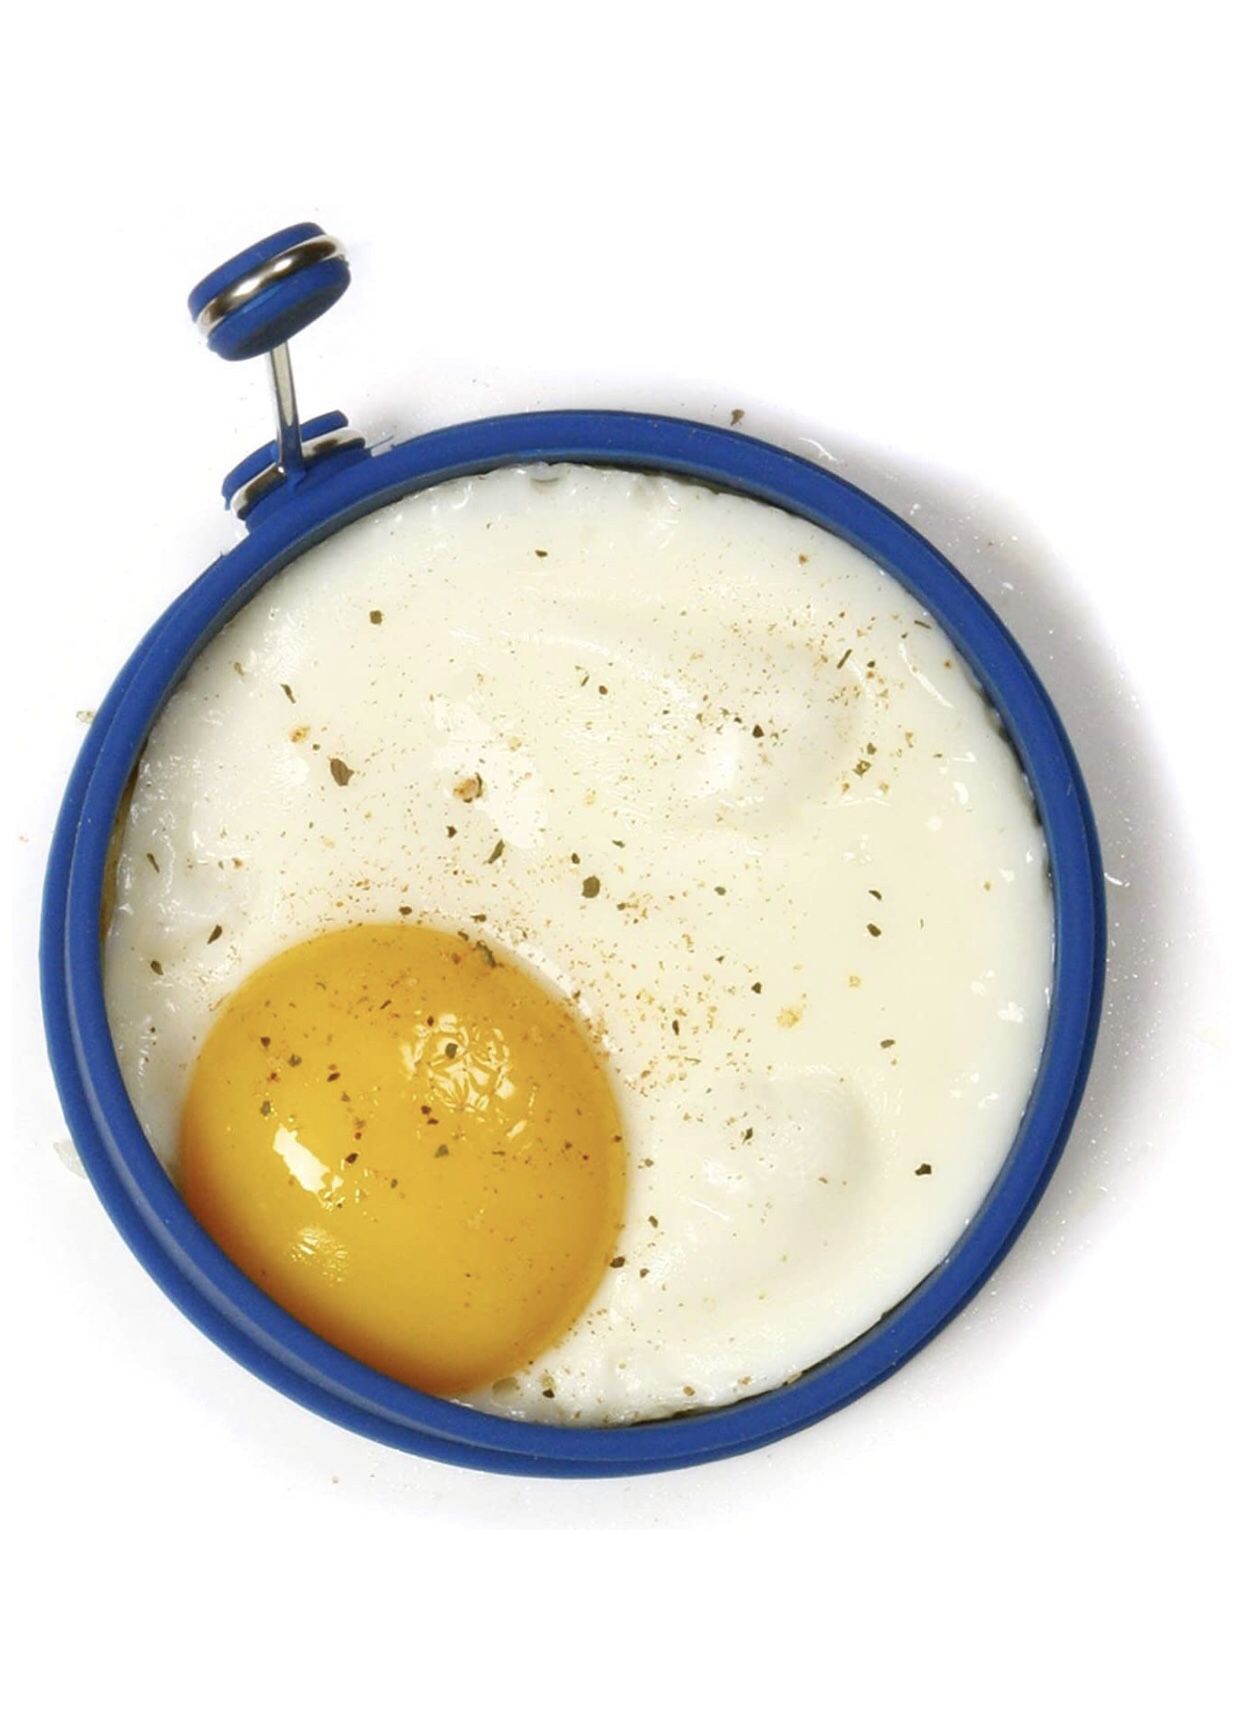 Silicone egg/pancake rings